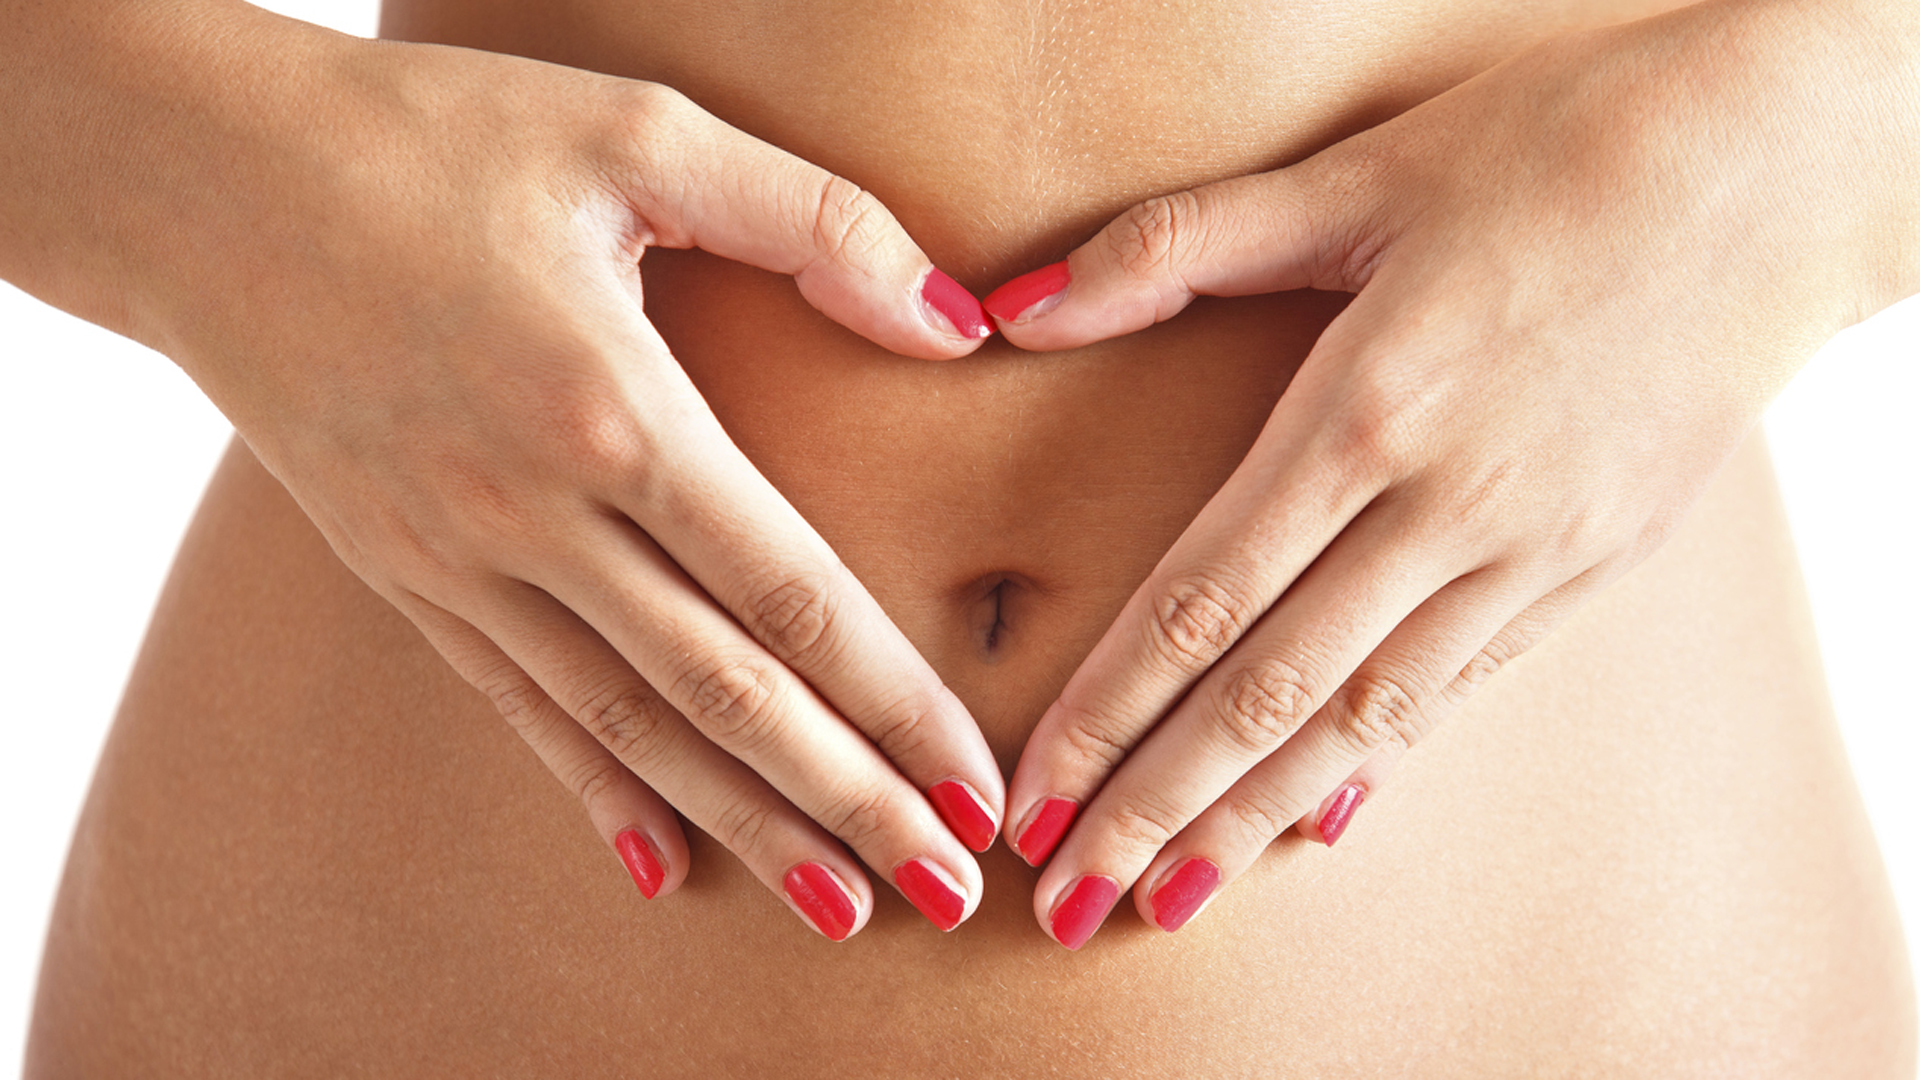 La endometriosis afecta alrededor del 10% de las mujeres jóvenes  